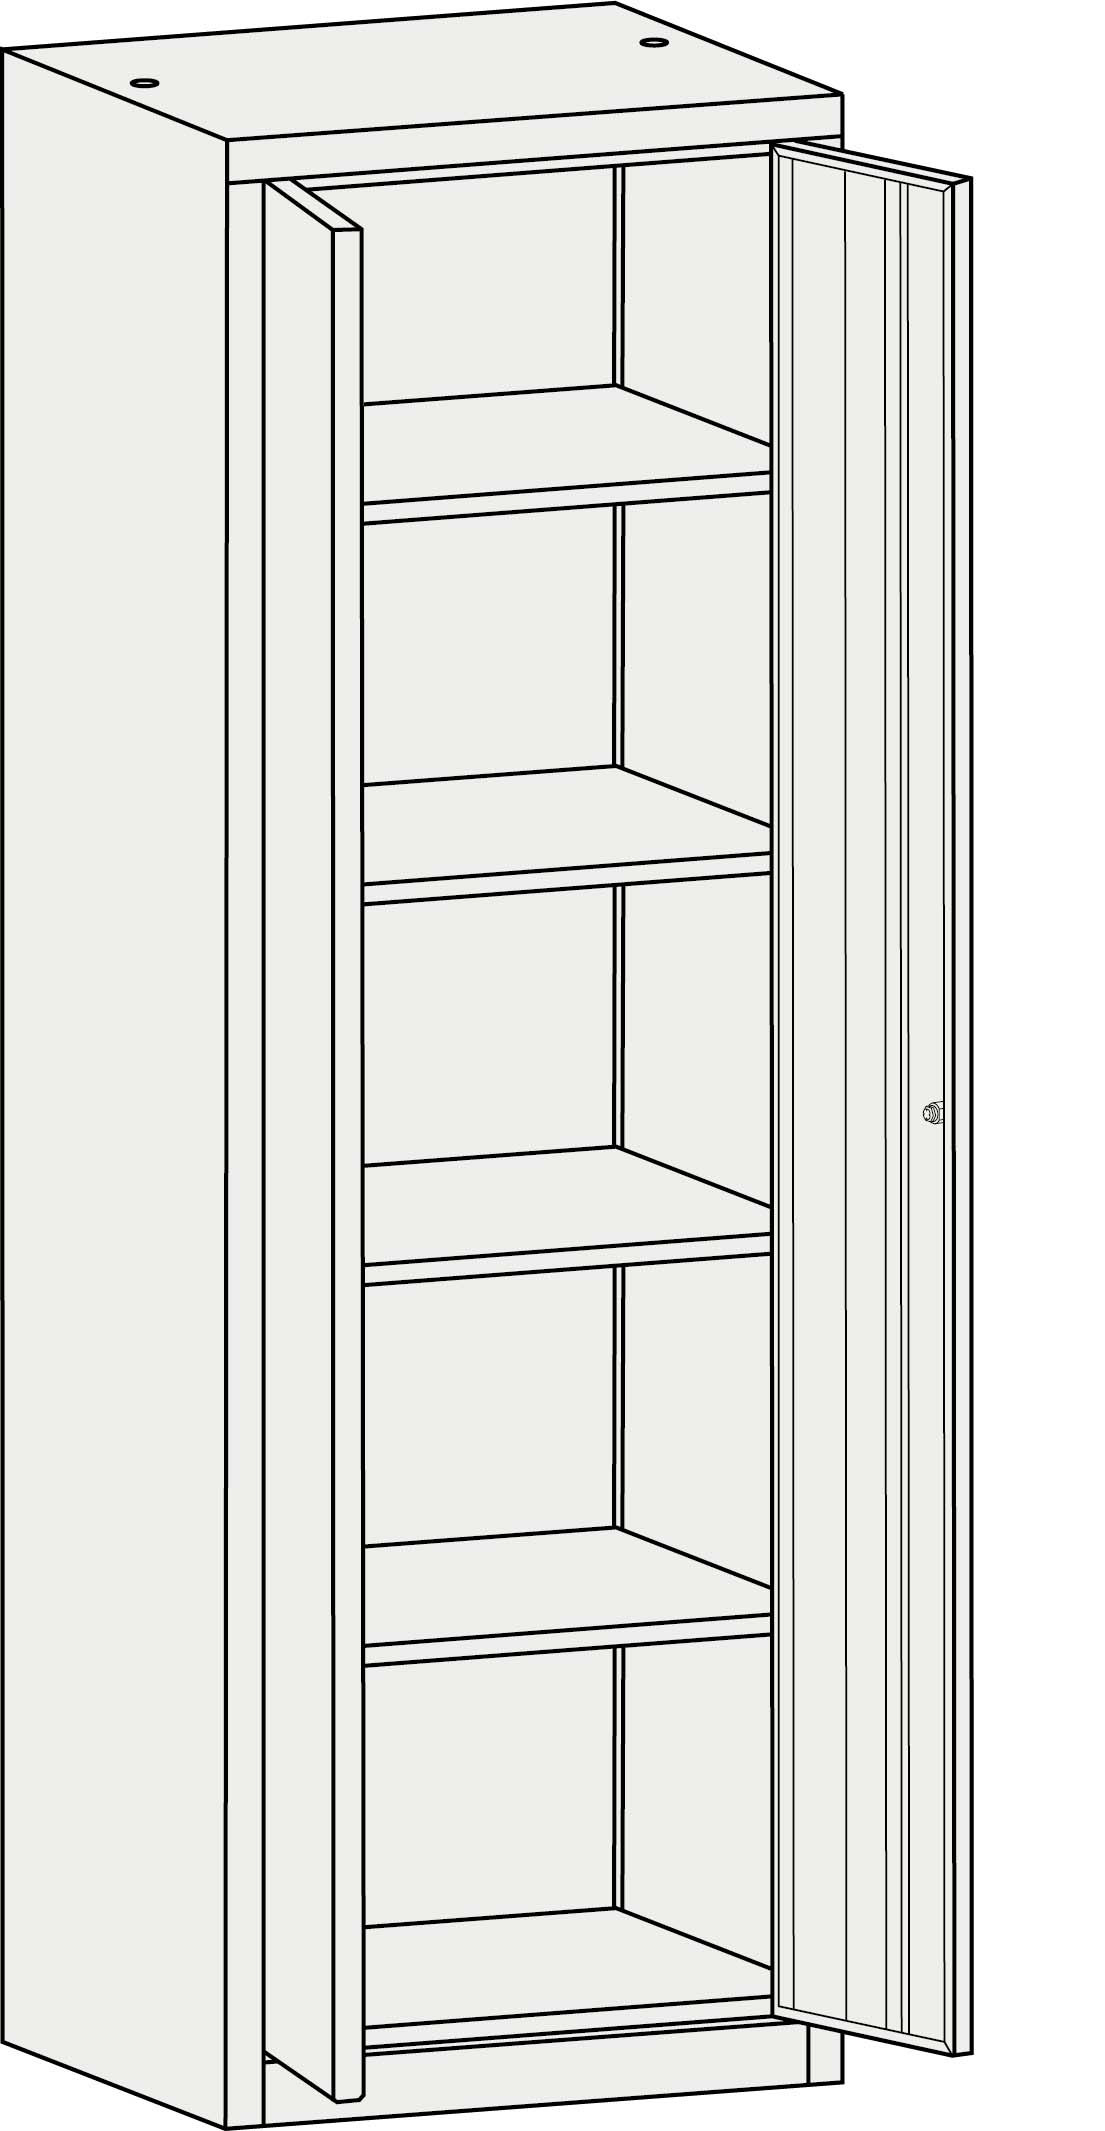 Shelves cabinet